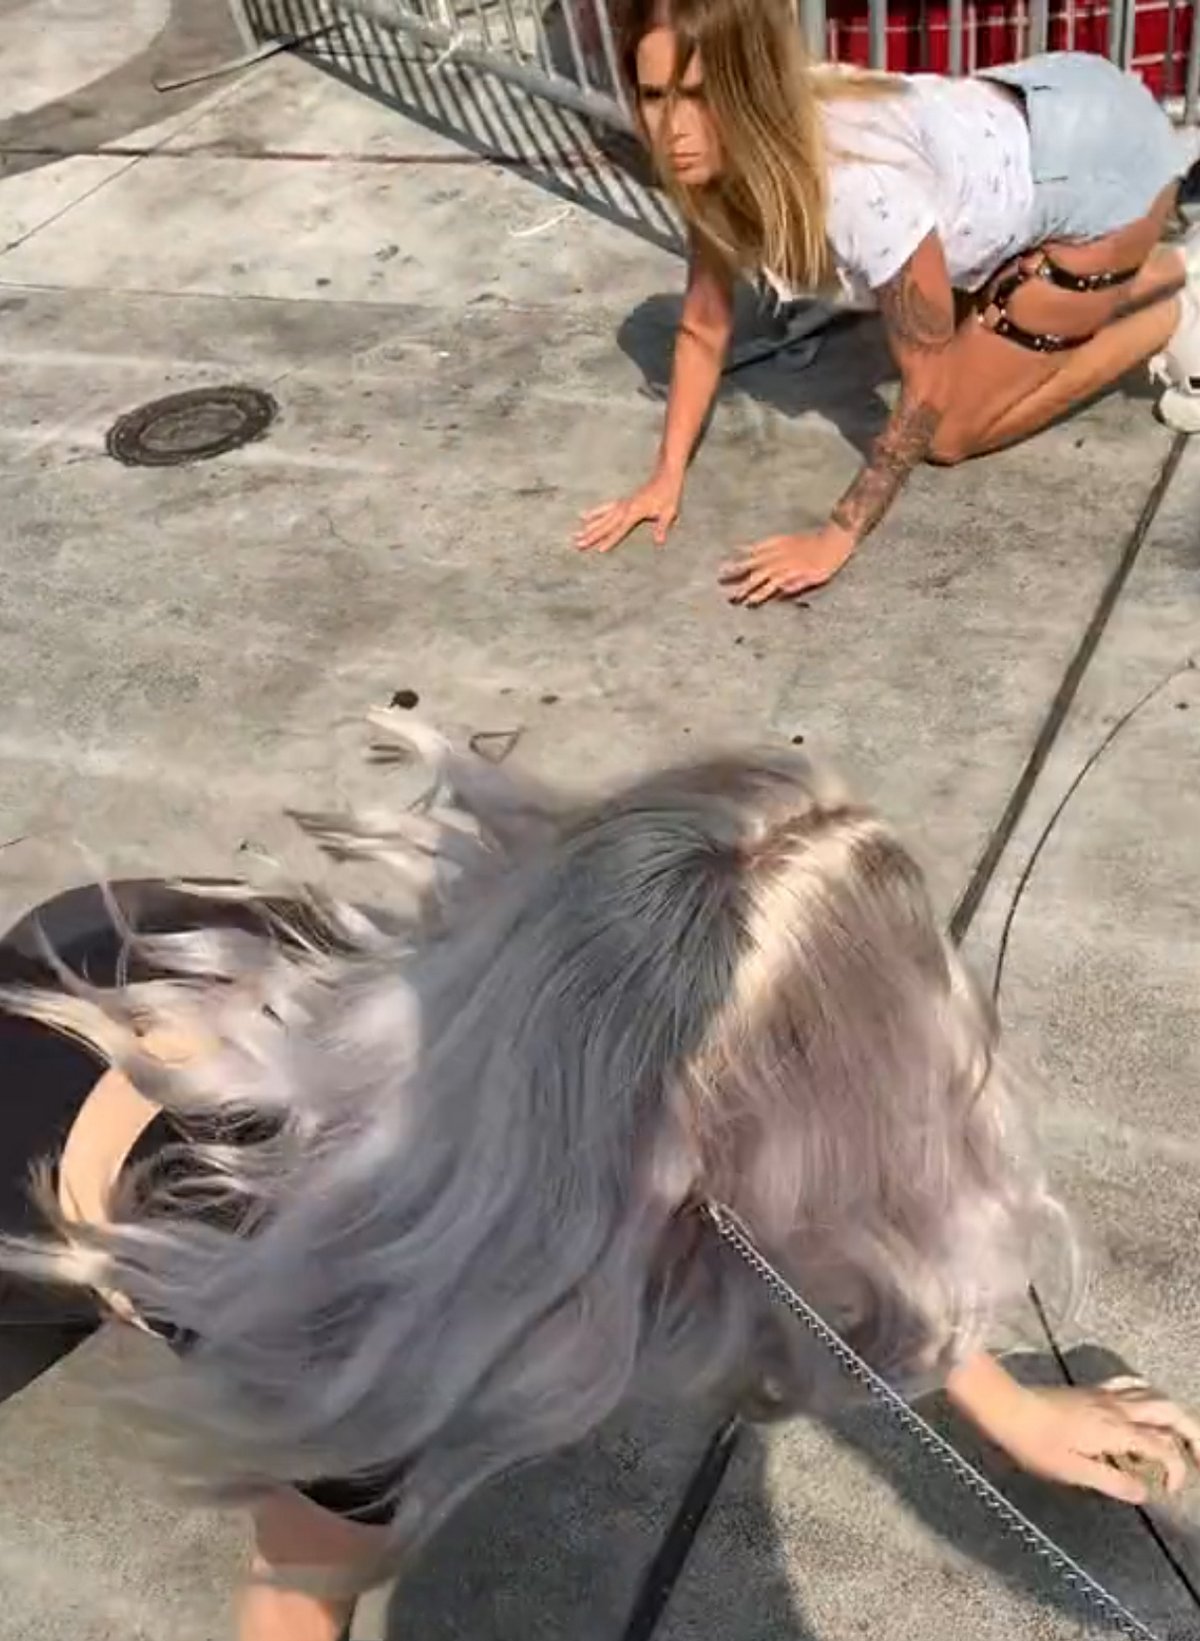 Cette femme qui a quitté son emploi pour vivre comme un chiot se bat avec une autre « chienne » dans la rue